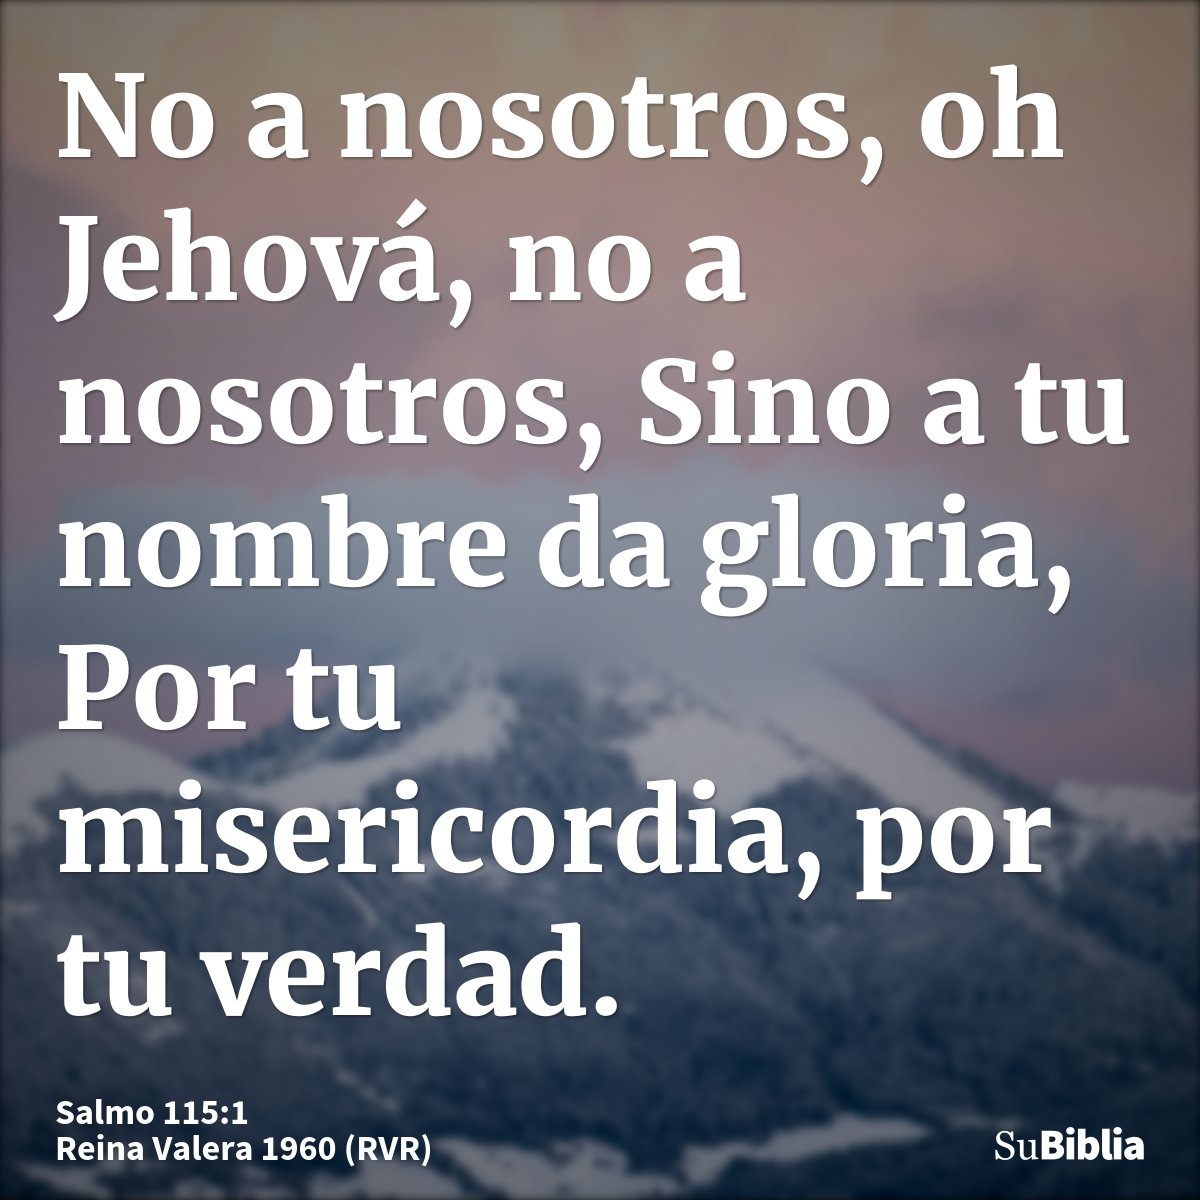 No a nosotros, oh Jehová, no a nosotros, Sino a tu nombre da gloria, Por tu misericordia, por tu verdad.